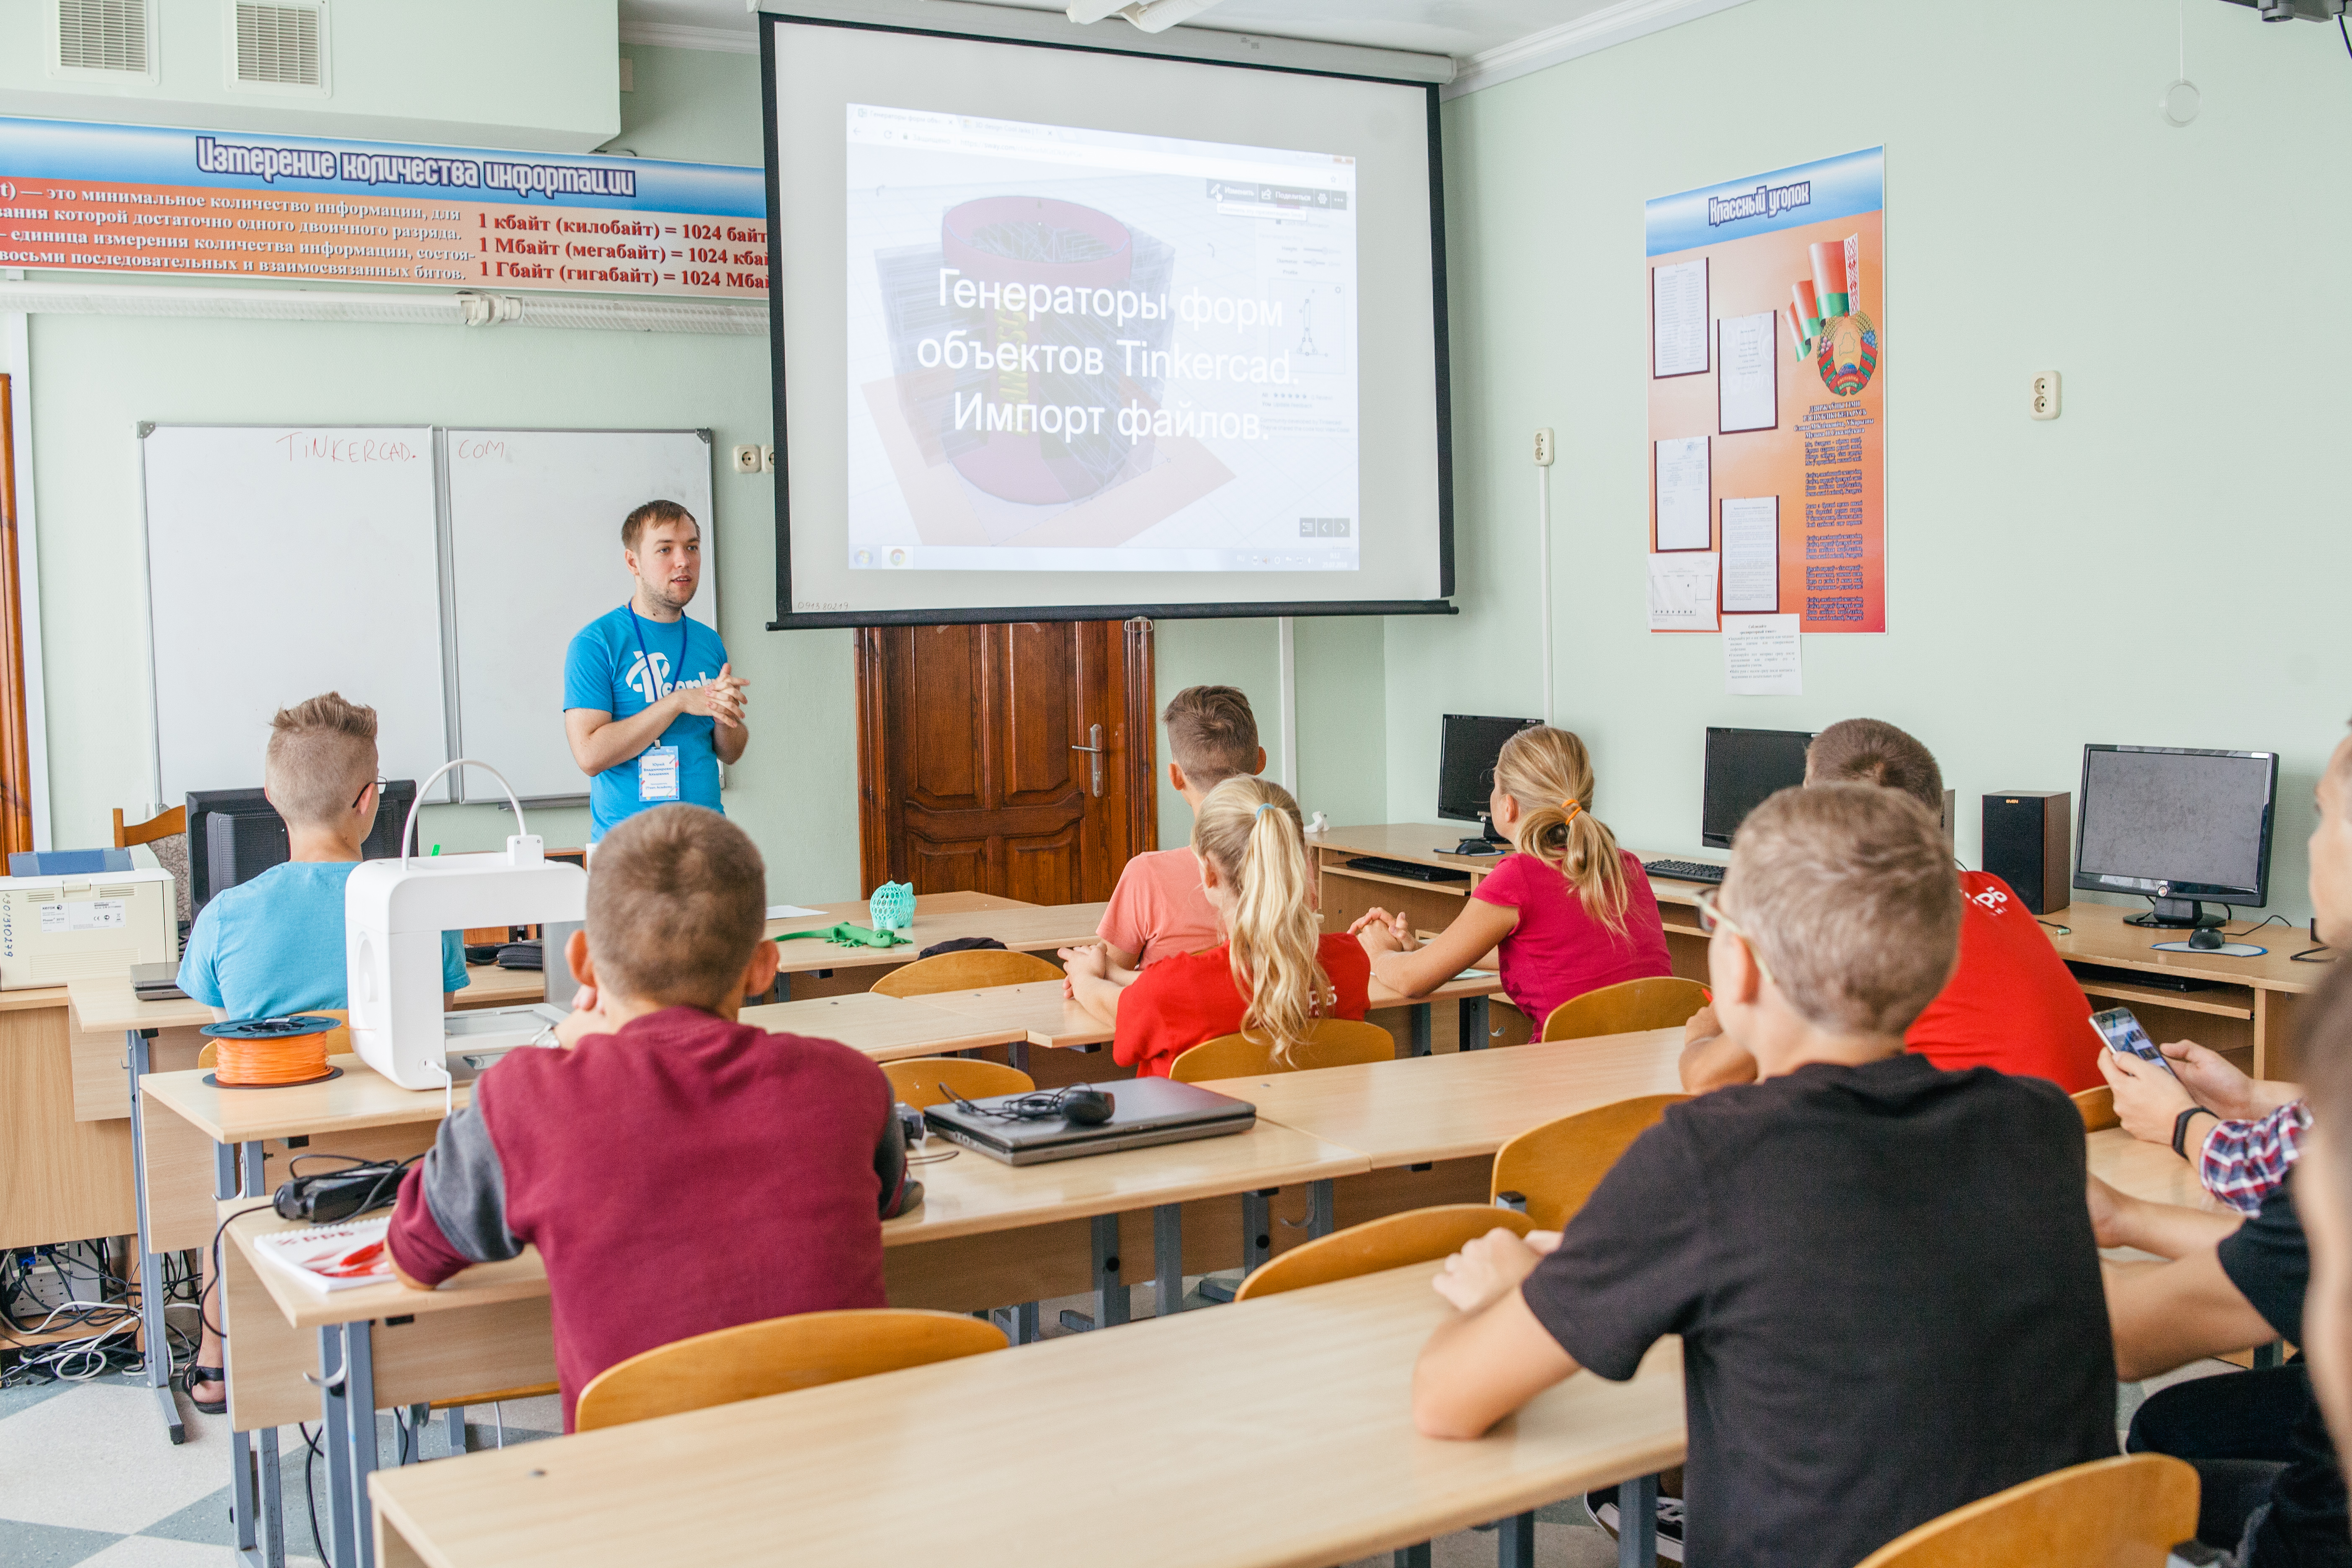 «Это должно быть удовольствием, а не стрессом». Как белорусский социальный стартап YOU CAN помогает подросткам выбрать профессию, а бизнесу — найти будущих сотрудников